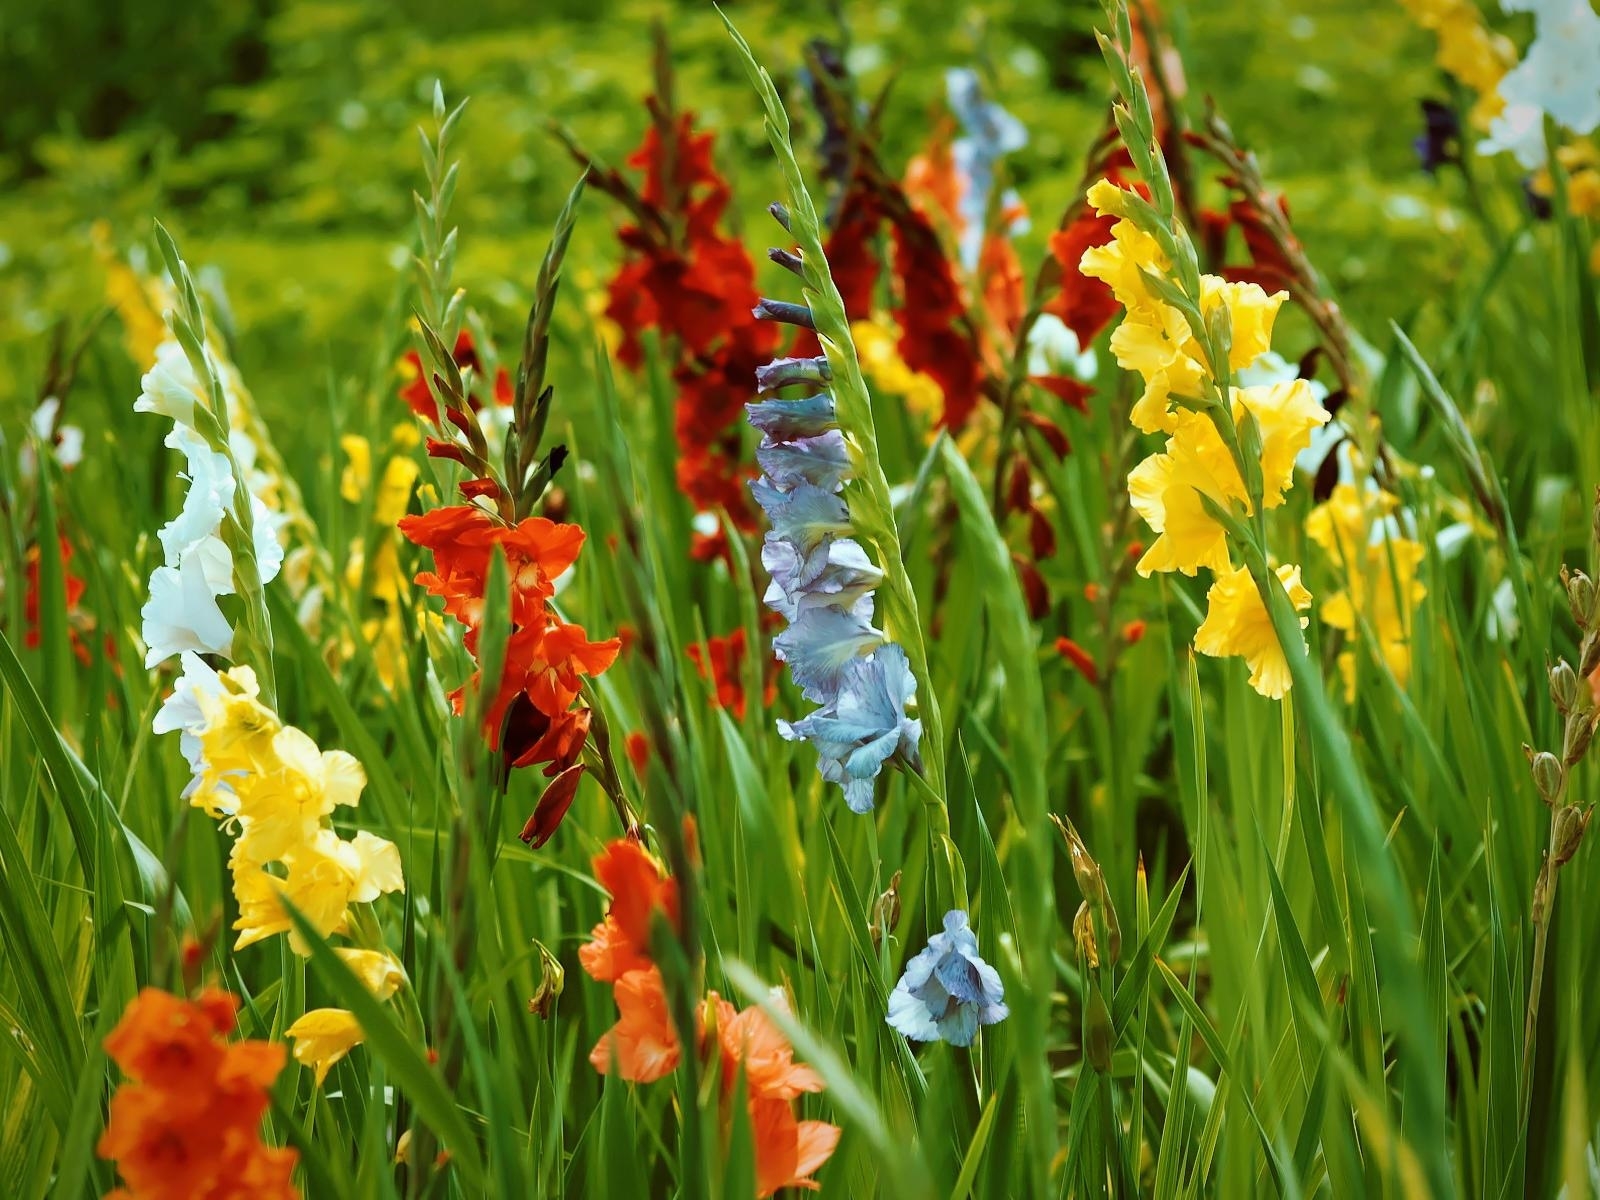 Bulbi di Gladiolo,Esotico,Fiori rari,I fiori di gladiolo fioriranno anno dopo anno,Fiori facili da coltivare,Le lampadine di alta qualità producono piante di prima classe,Adattabile-5 Bulbi,1 